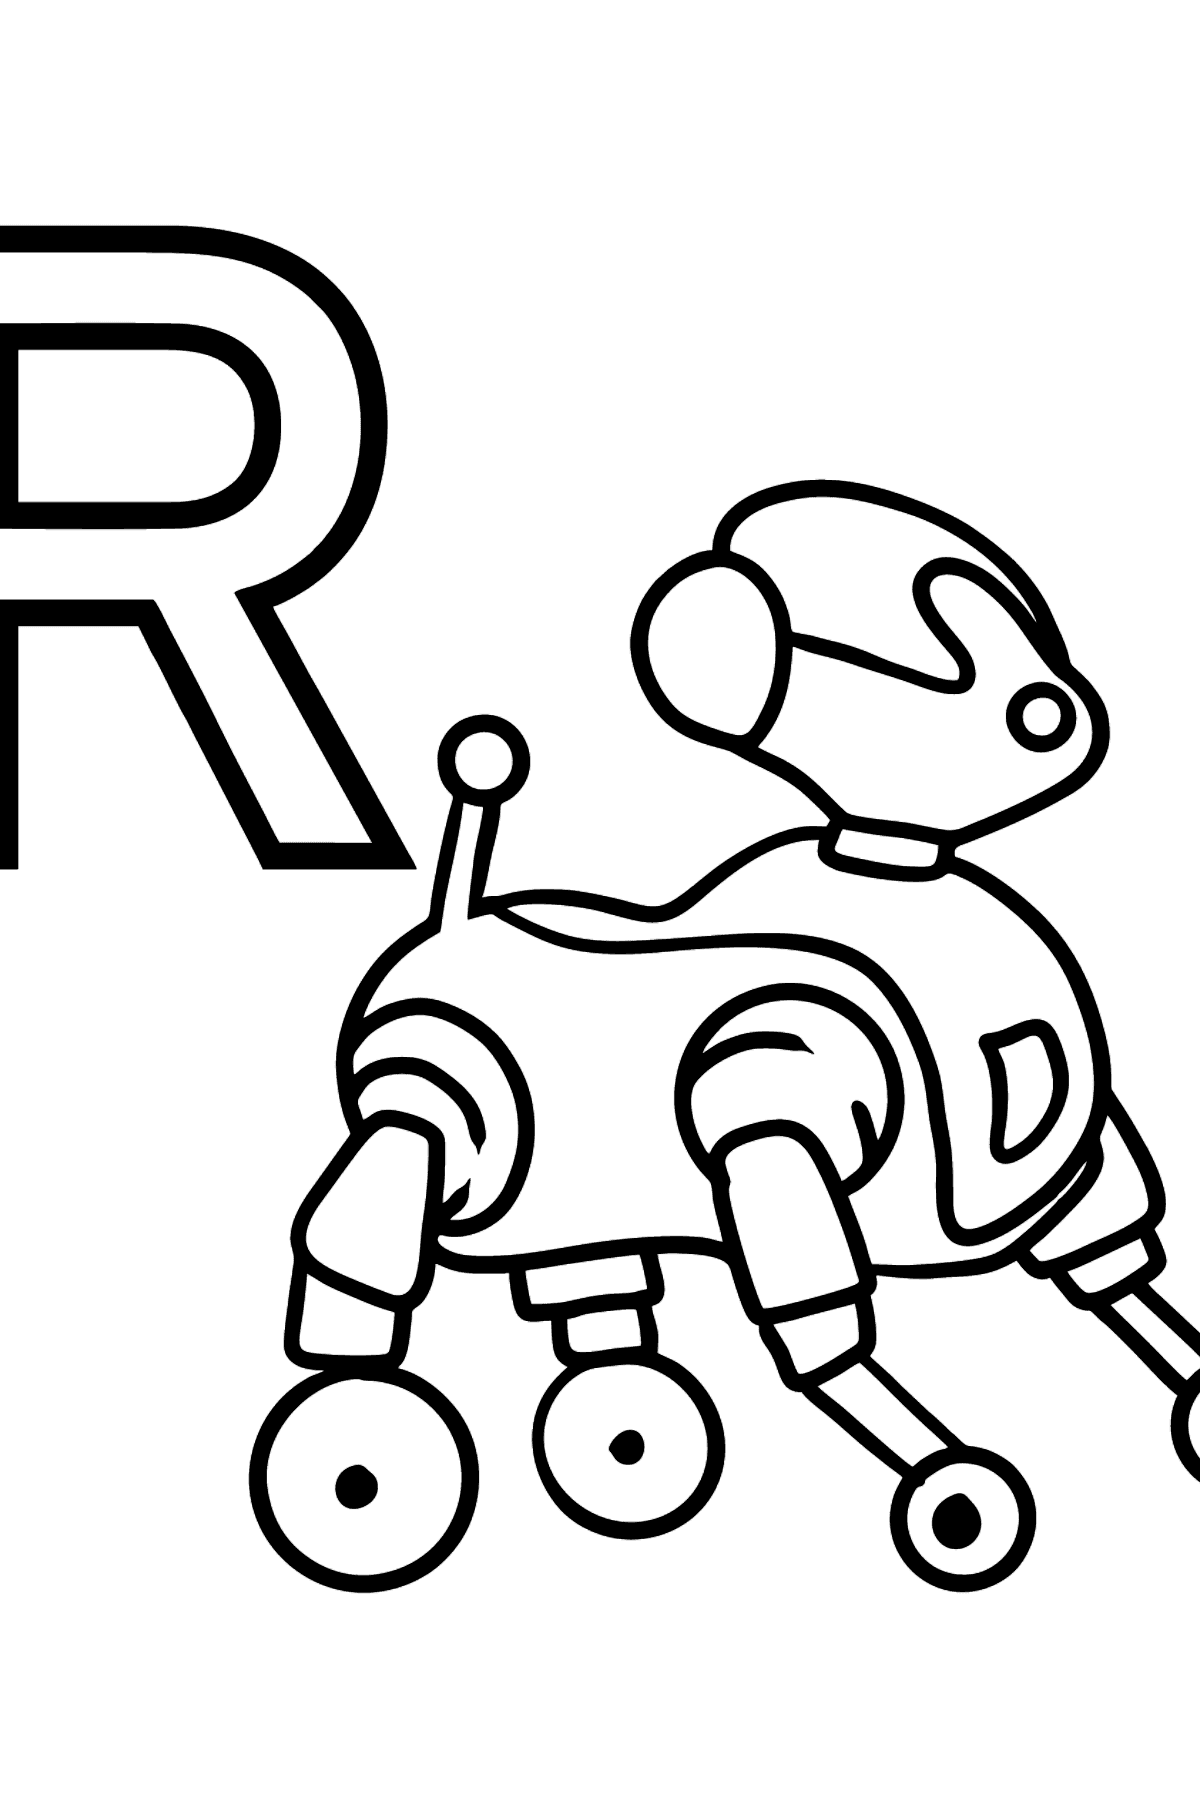 Dibujo de Letra R Español para colorear - ROBOT - Dibujos para Colorear para Niños